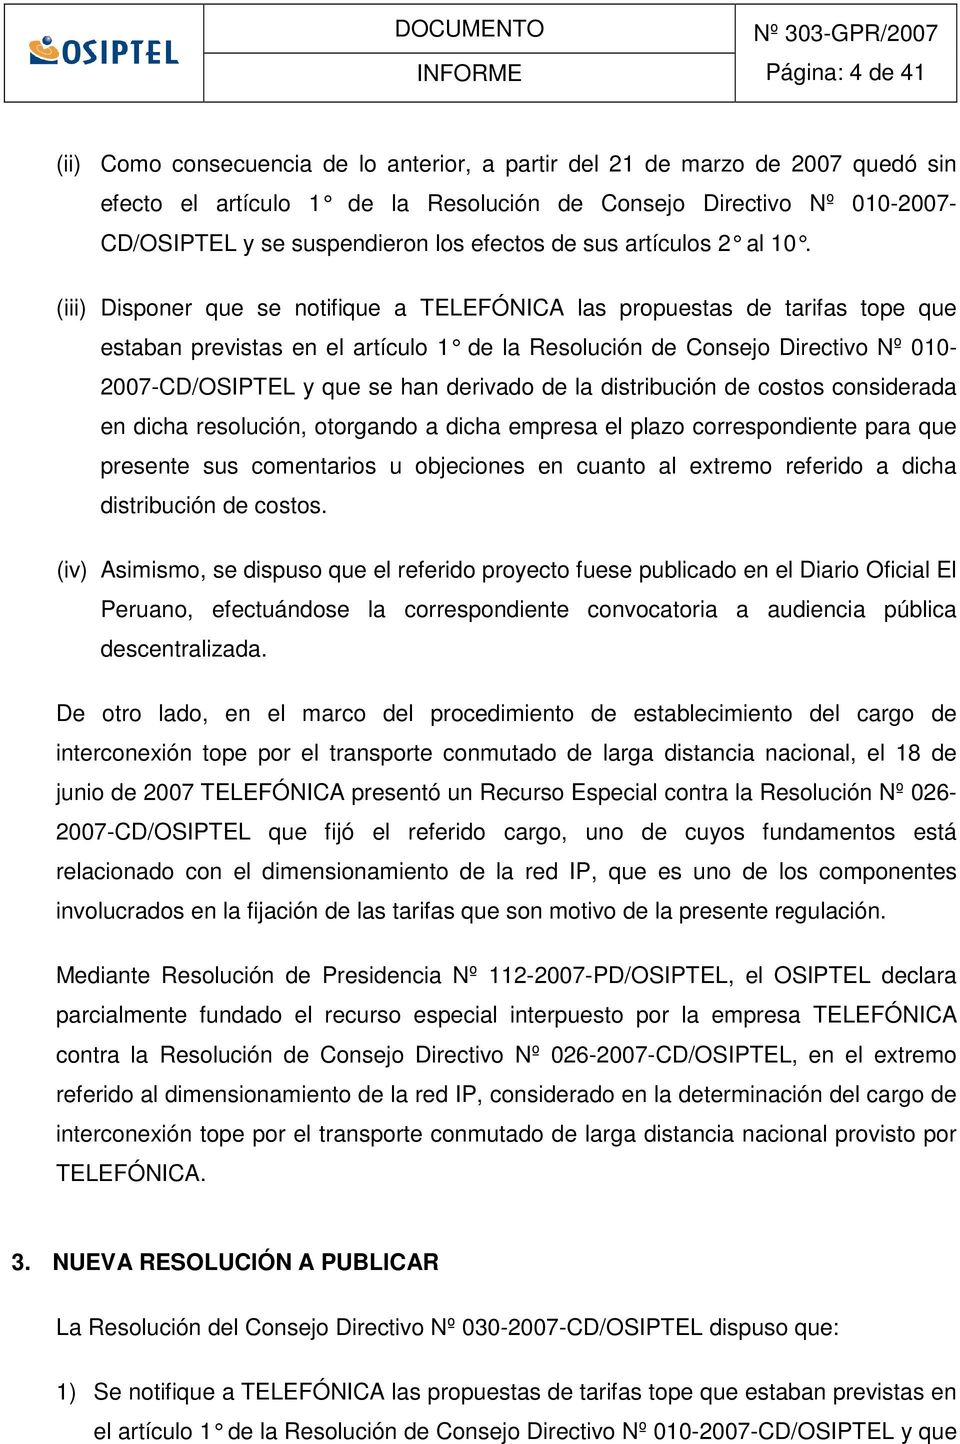 () Dsponer que se notfque a TELEFÓNICA las propuestas de tarfas tope que estaban prevstas en el artículo 1 de la Resolucón de Consejo Drectvo Nº 010-2007-CD/OSIPTEL y que se han dervado de la